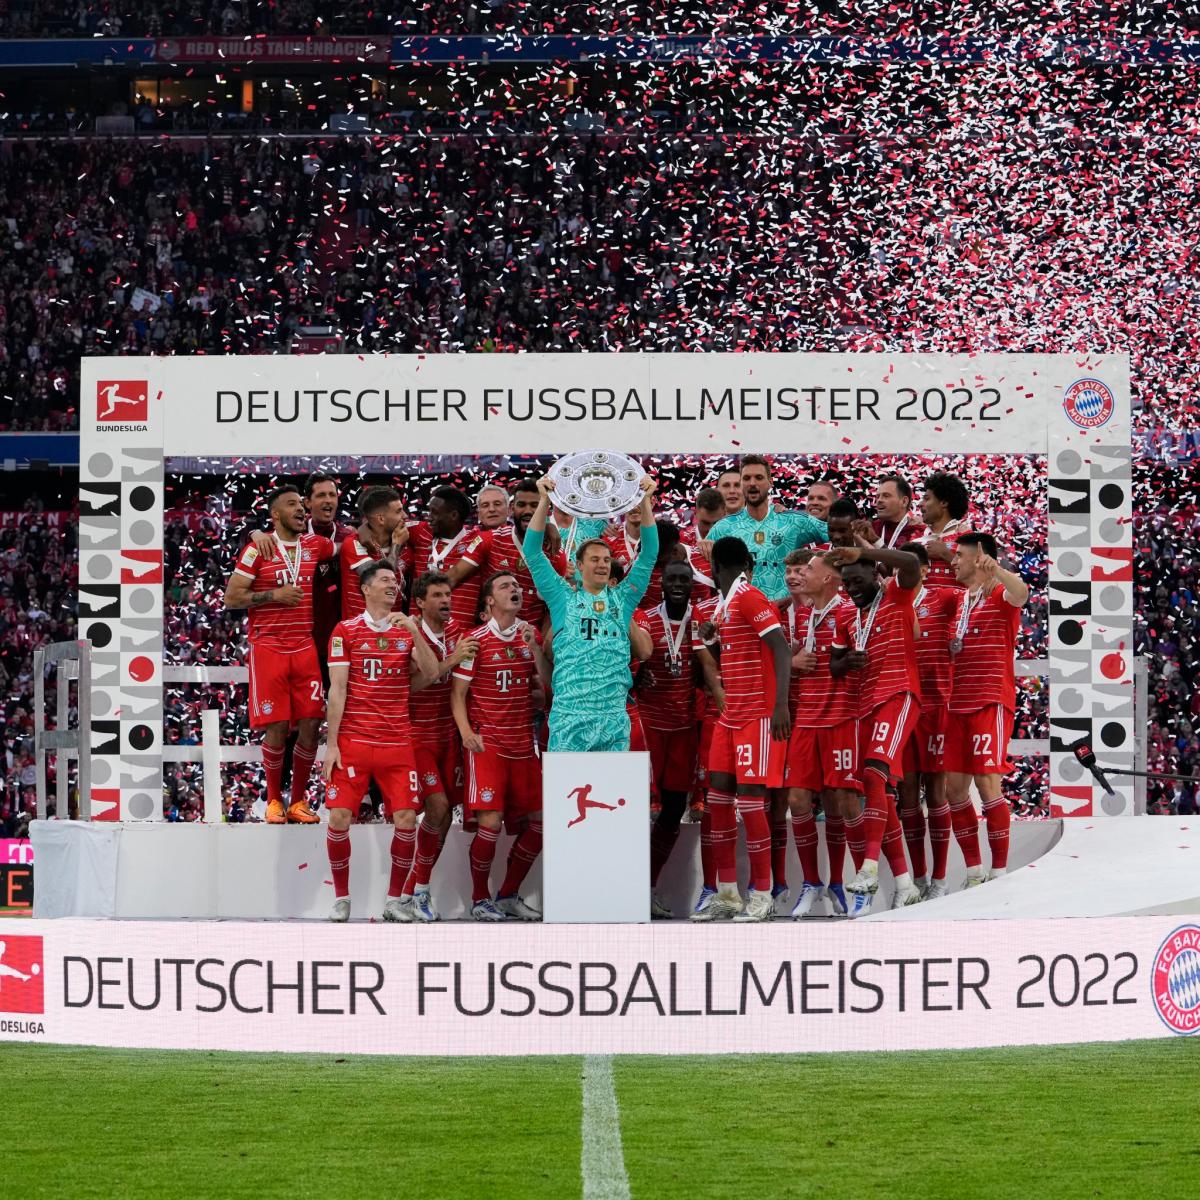 Facebook: Bayern Múnich oficial